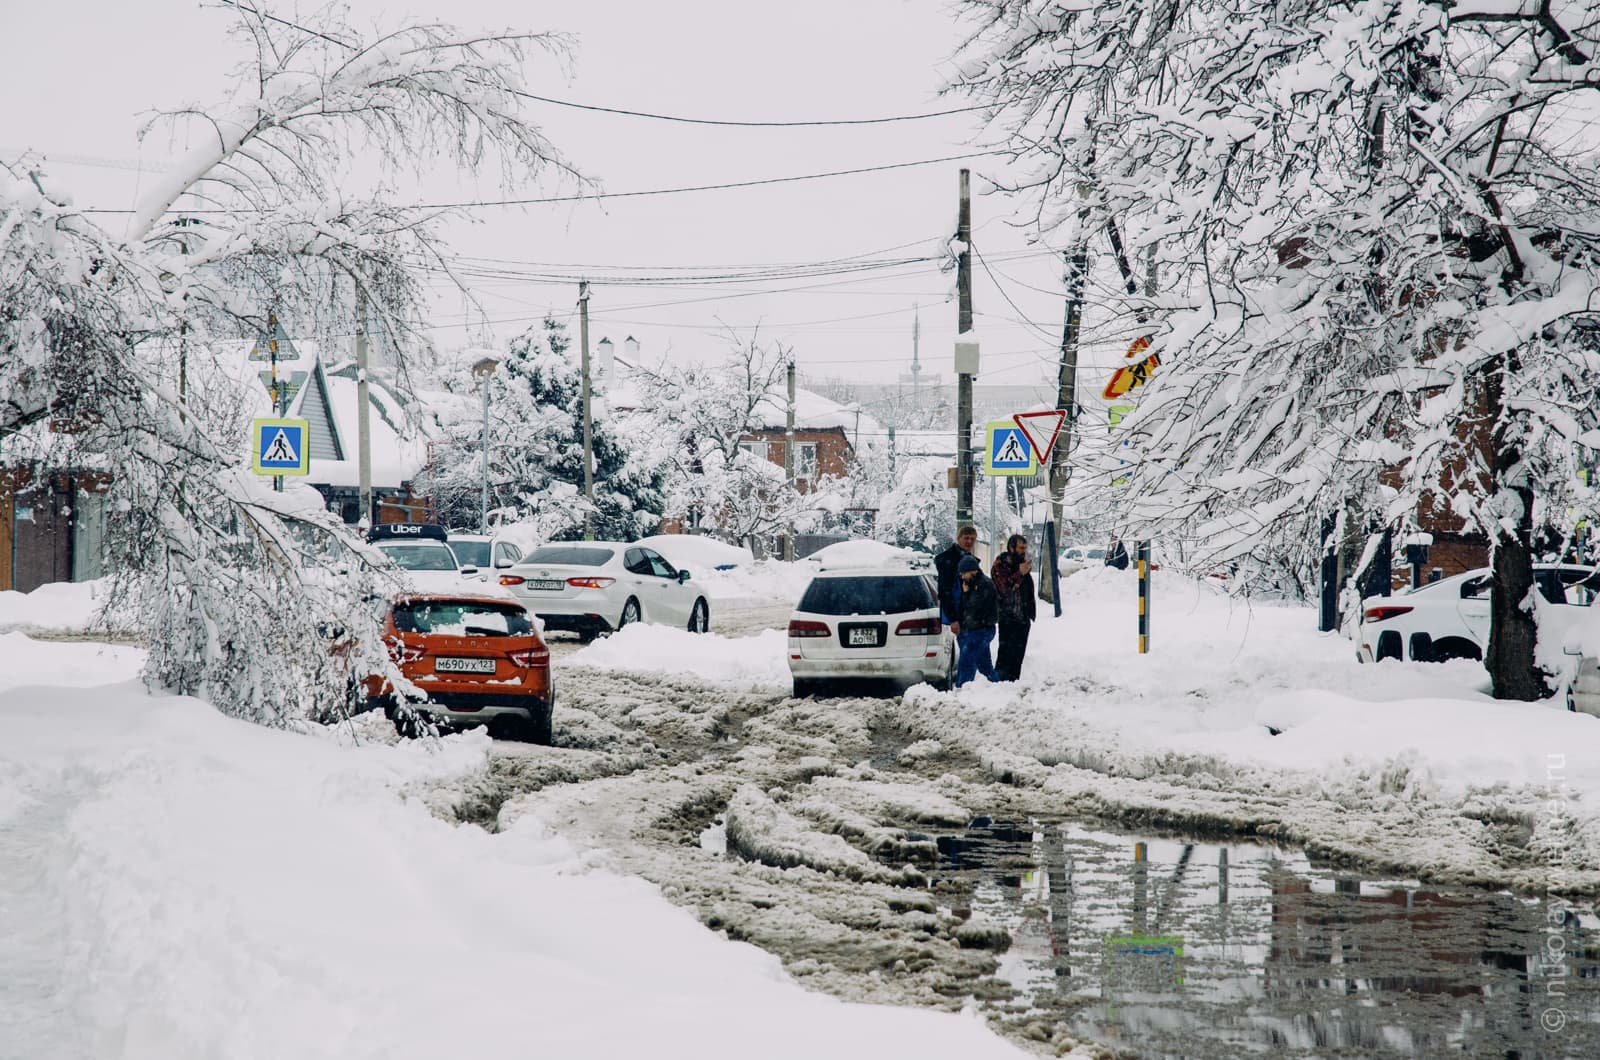 Узкая улица, на которой всё в снегу, но на проезжей части образовалсь большая лужа из подтаявшего снега